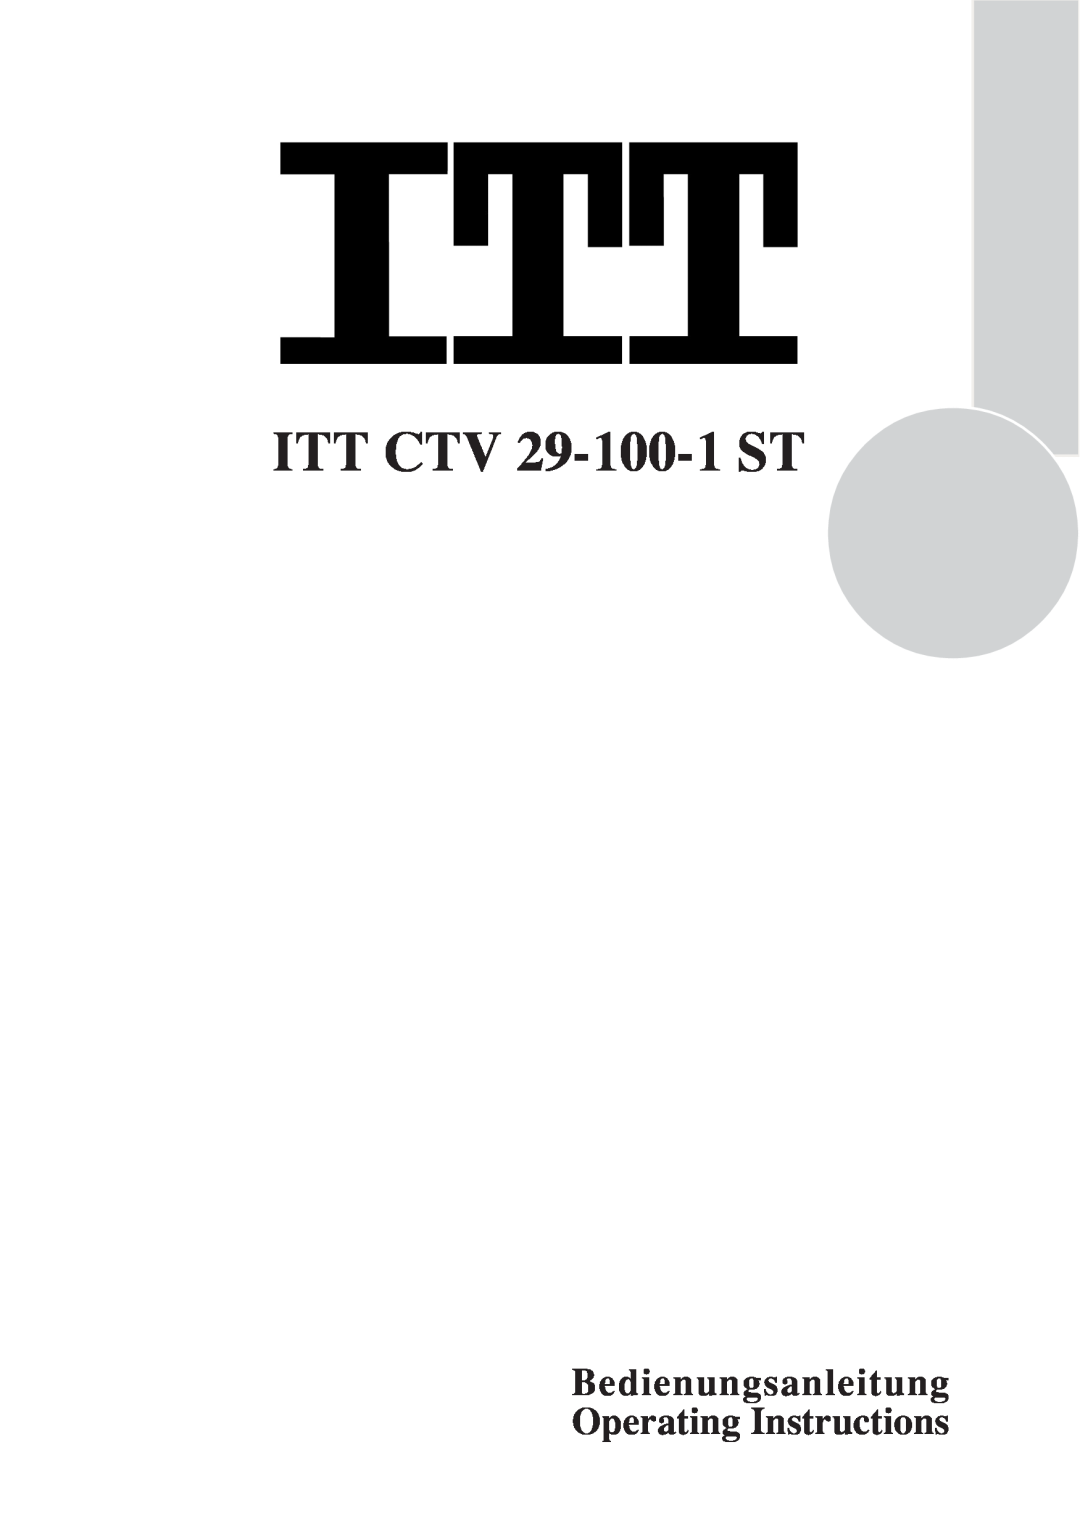 ITT manual ITT CTV 29-100-1 ST, Bedienungsanleitung Operating Instructions 